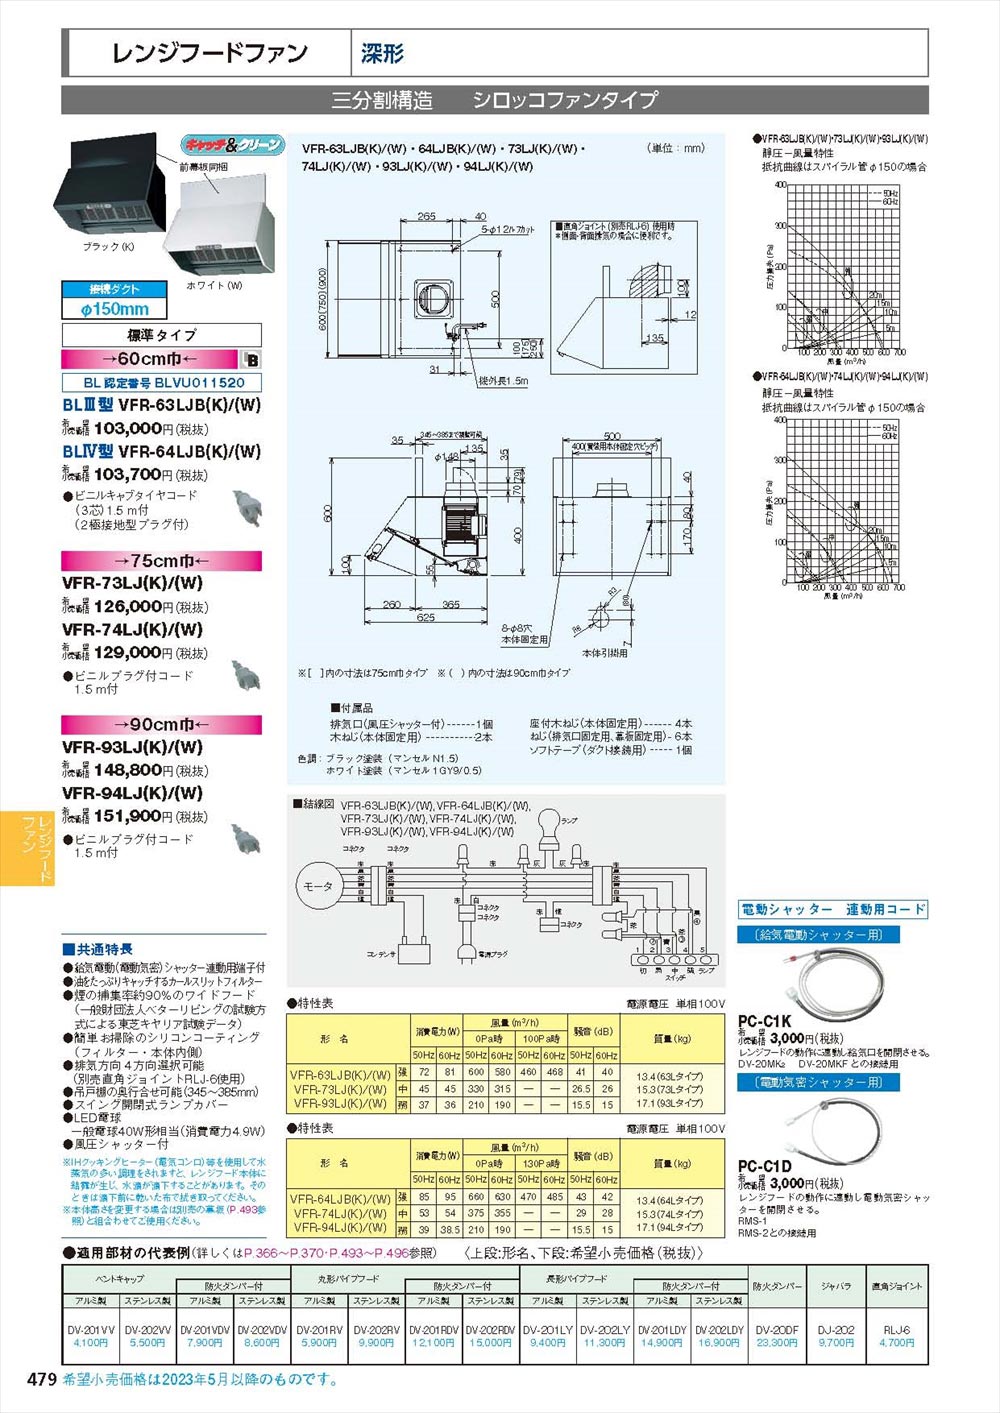 キッチン家電 東芝キャリア 深形レンジフードファン ホワイト 60cm 戸建住宅用 VKH-60L1(W) - 2